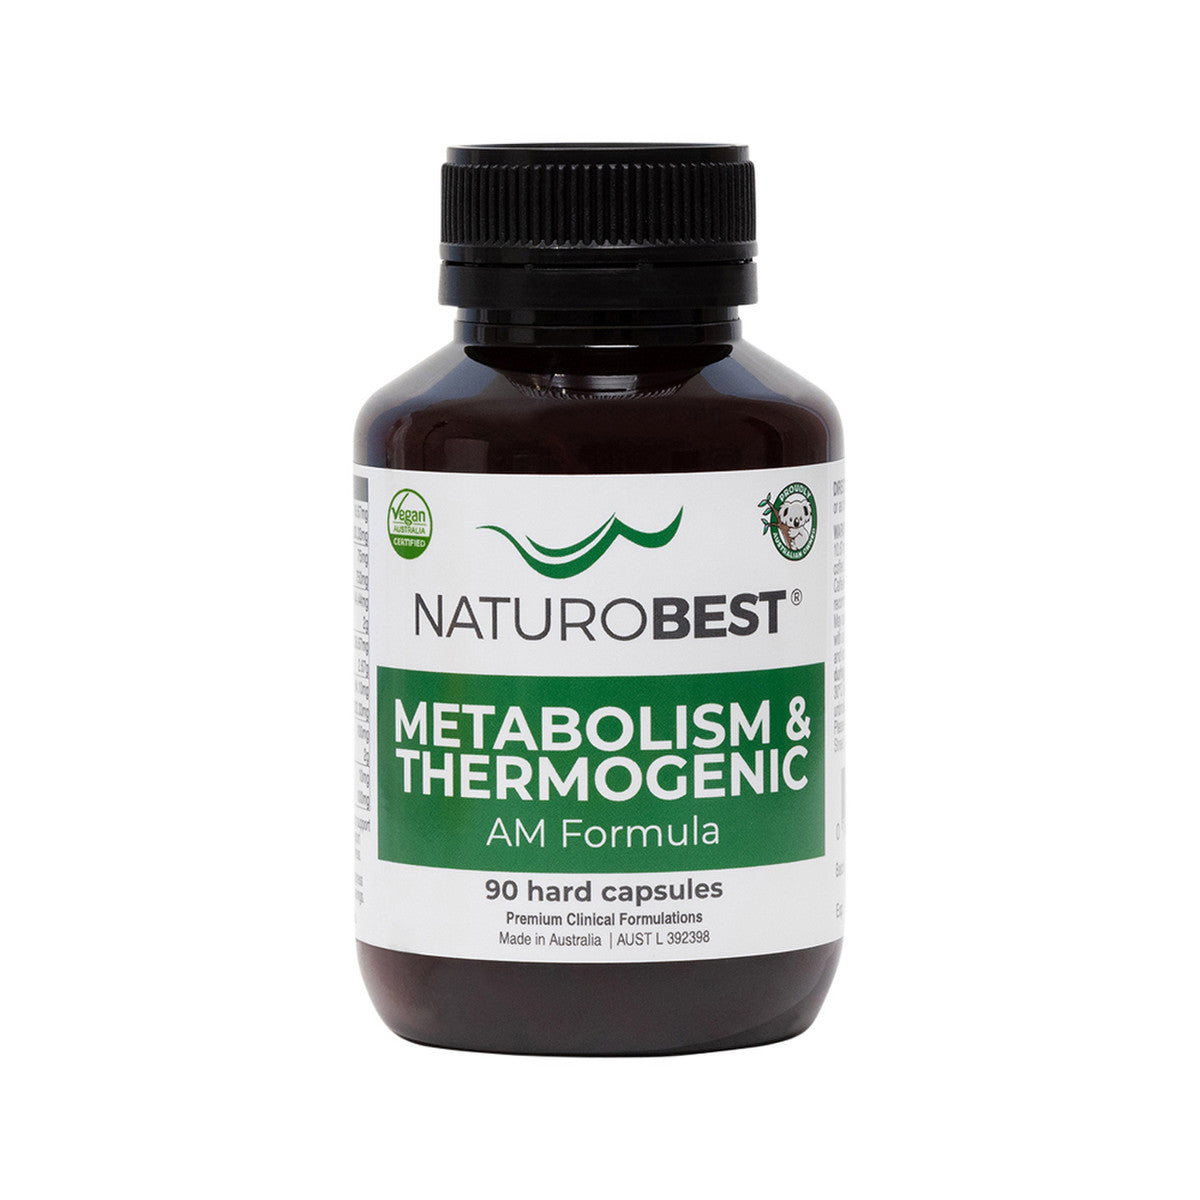 NaturoBest - Metabolism & Thermogenic AM Formula